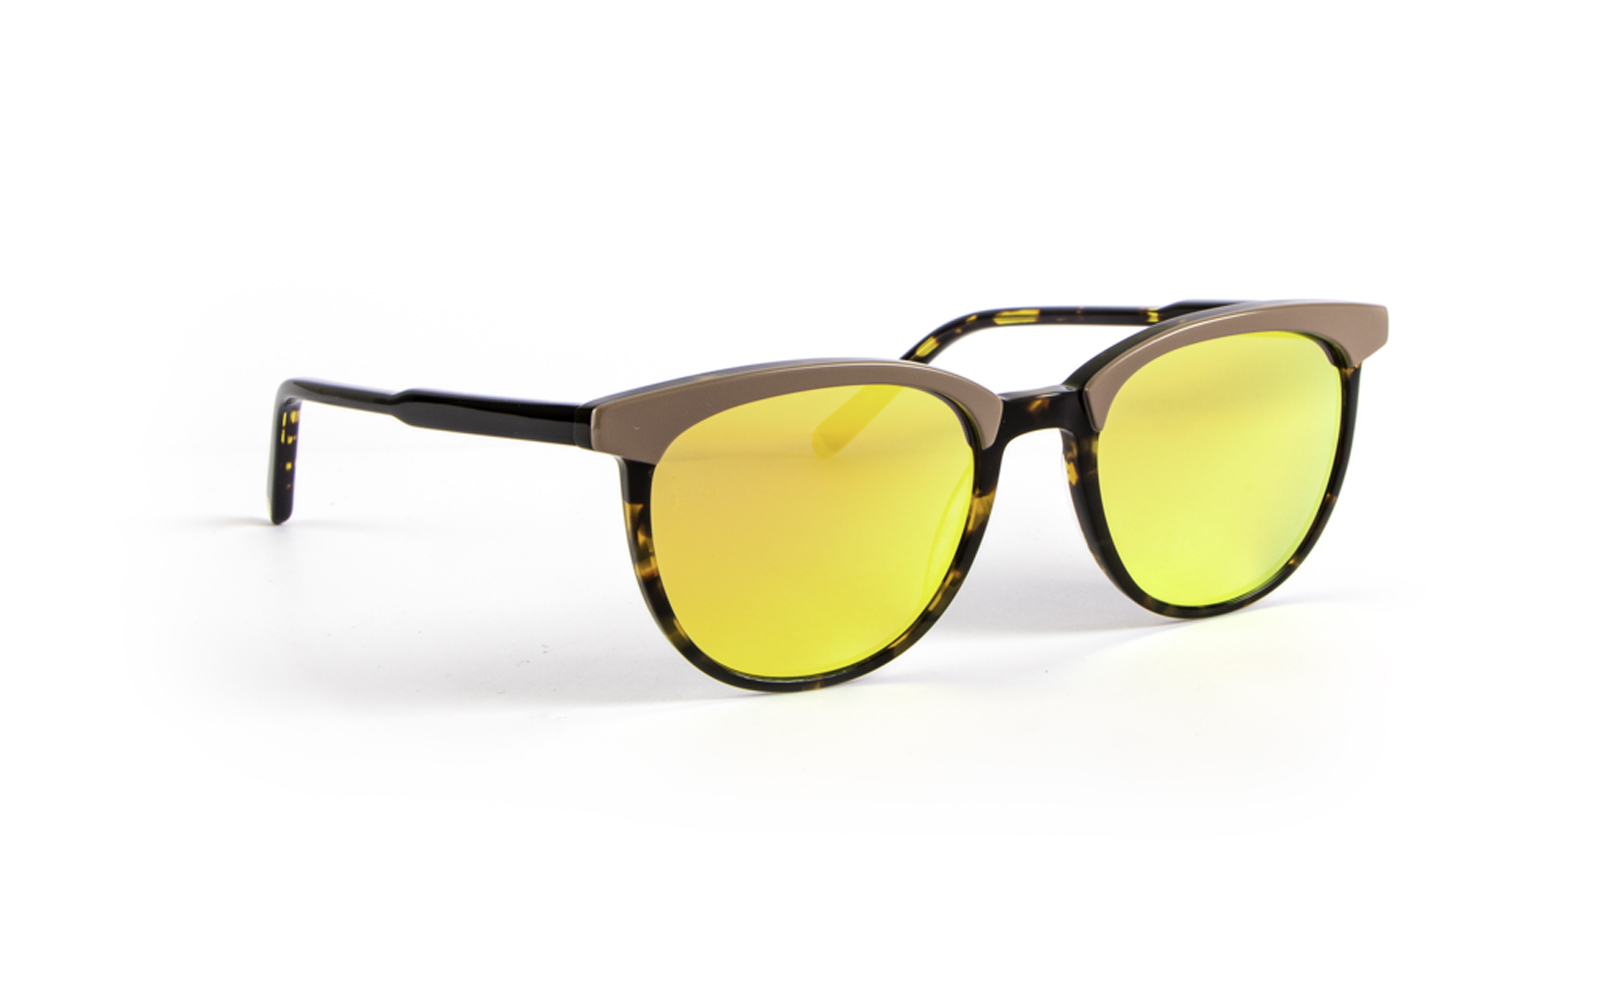 Invicta Men's Pro Diver Round Sunglasses, Yellow (6983-PRO-58)